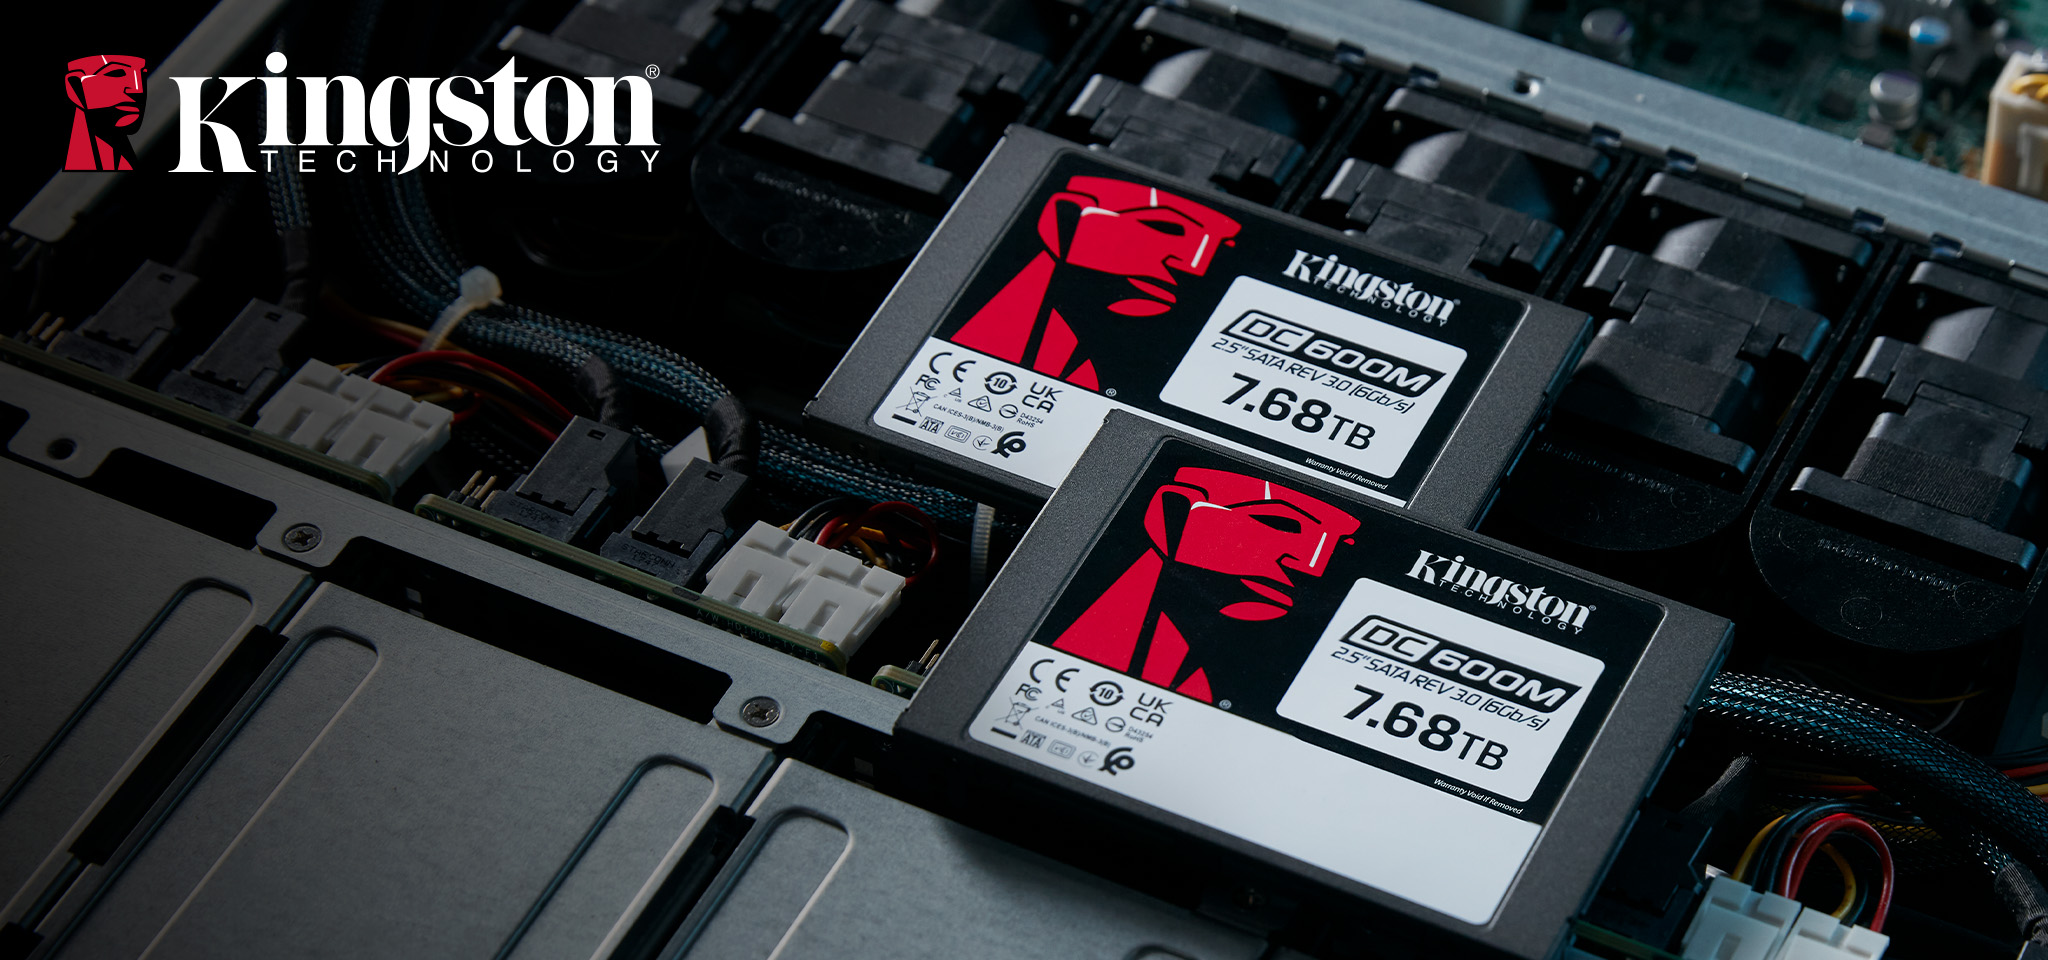 A quantity of two  Kingston DC600M 2.5” Enterprise SSD sit inside a server